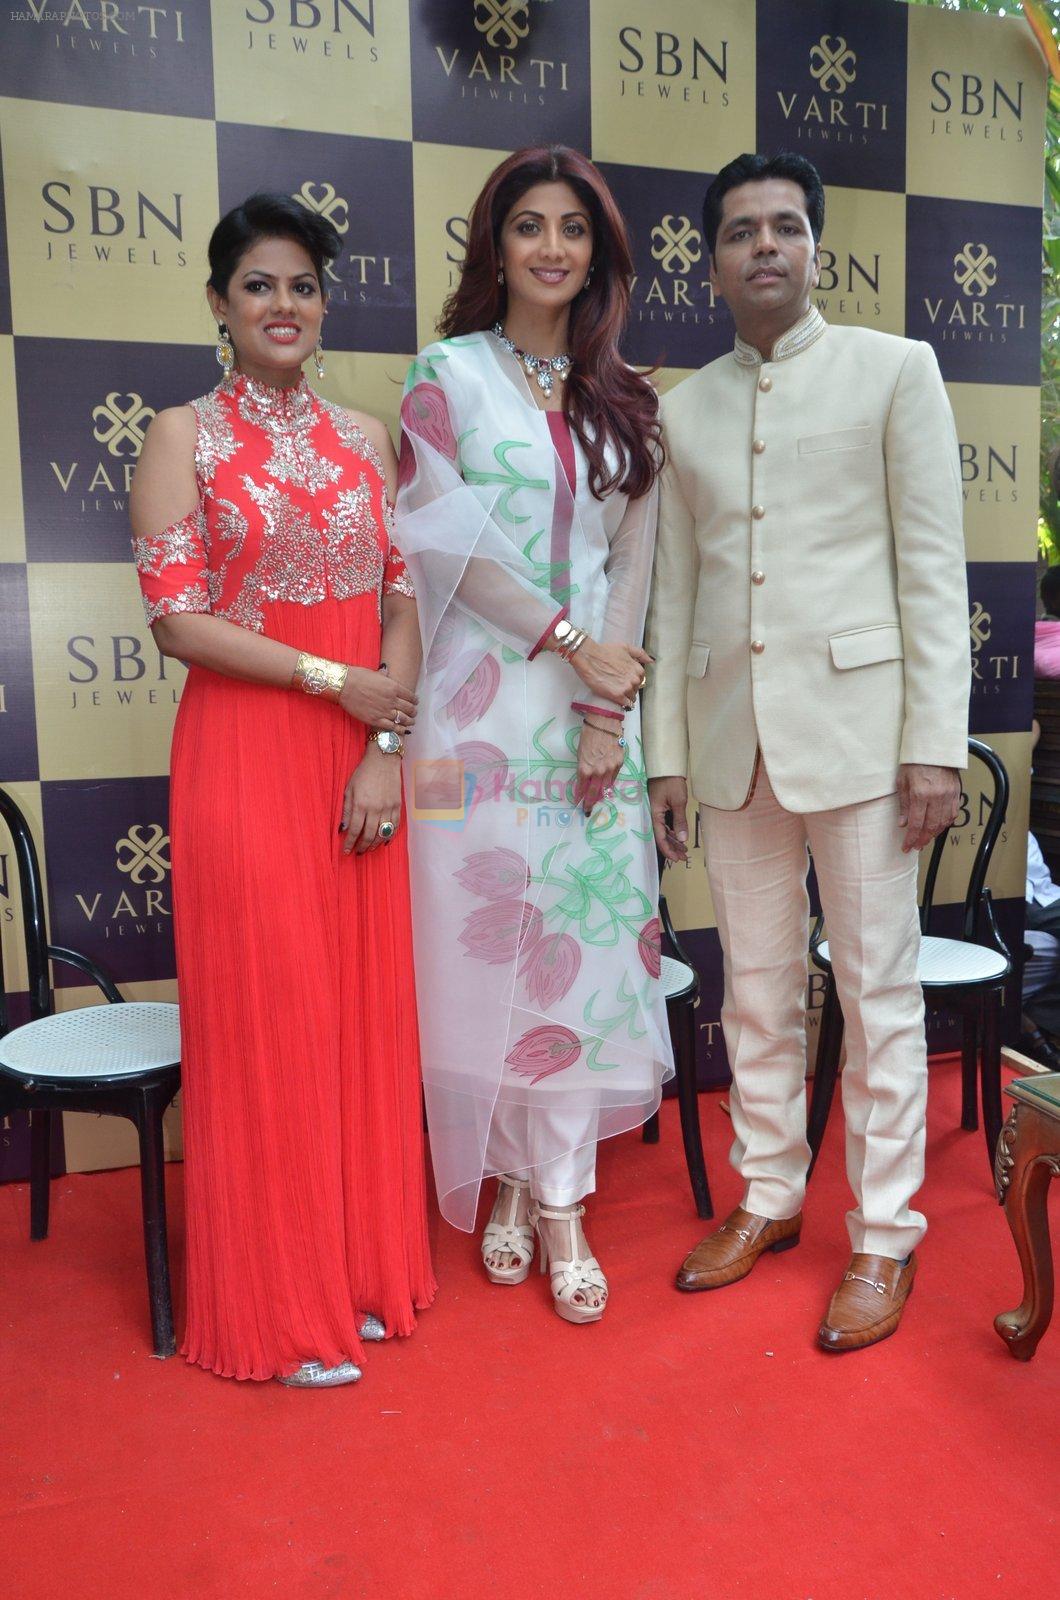 Shilpa Shetty at Varti Jewels